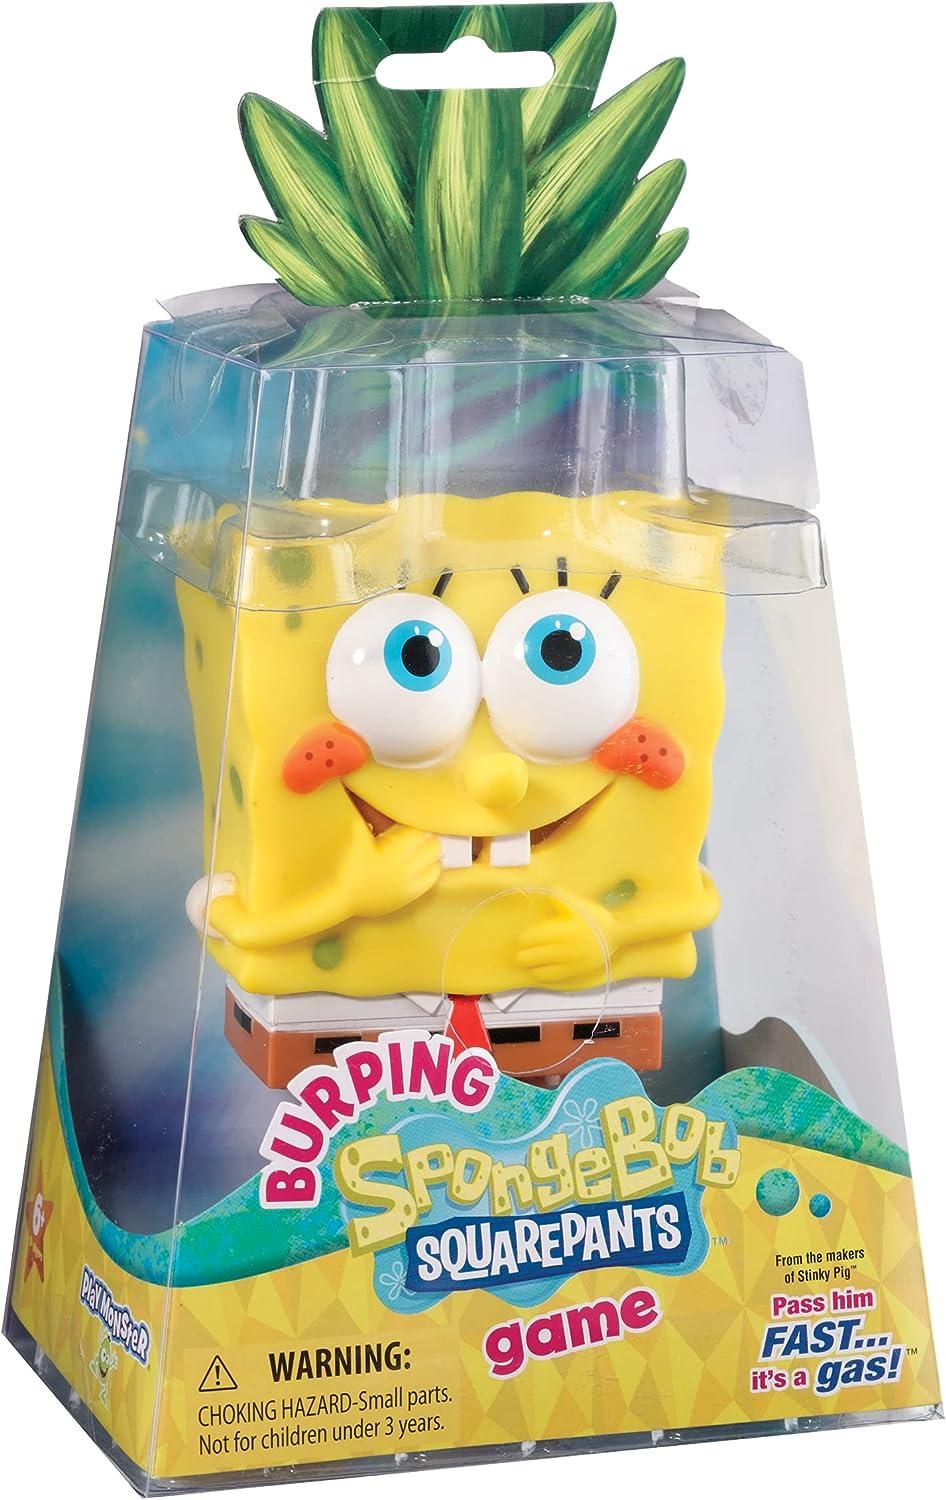 Burping Spongebob